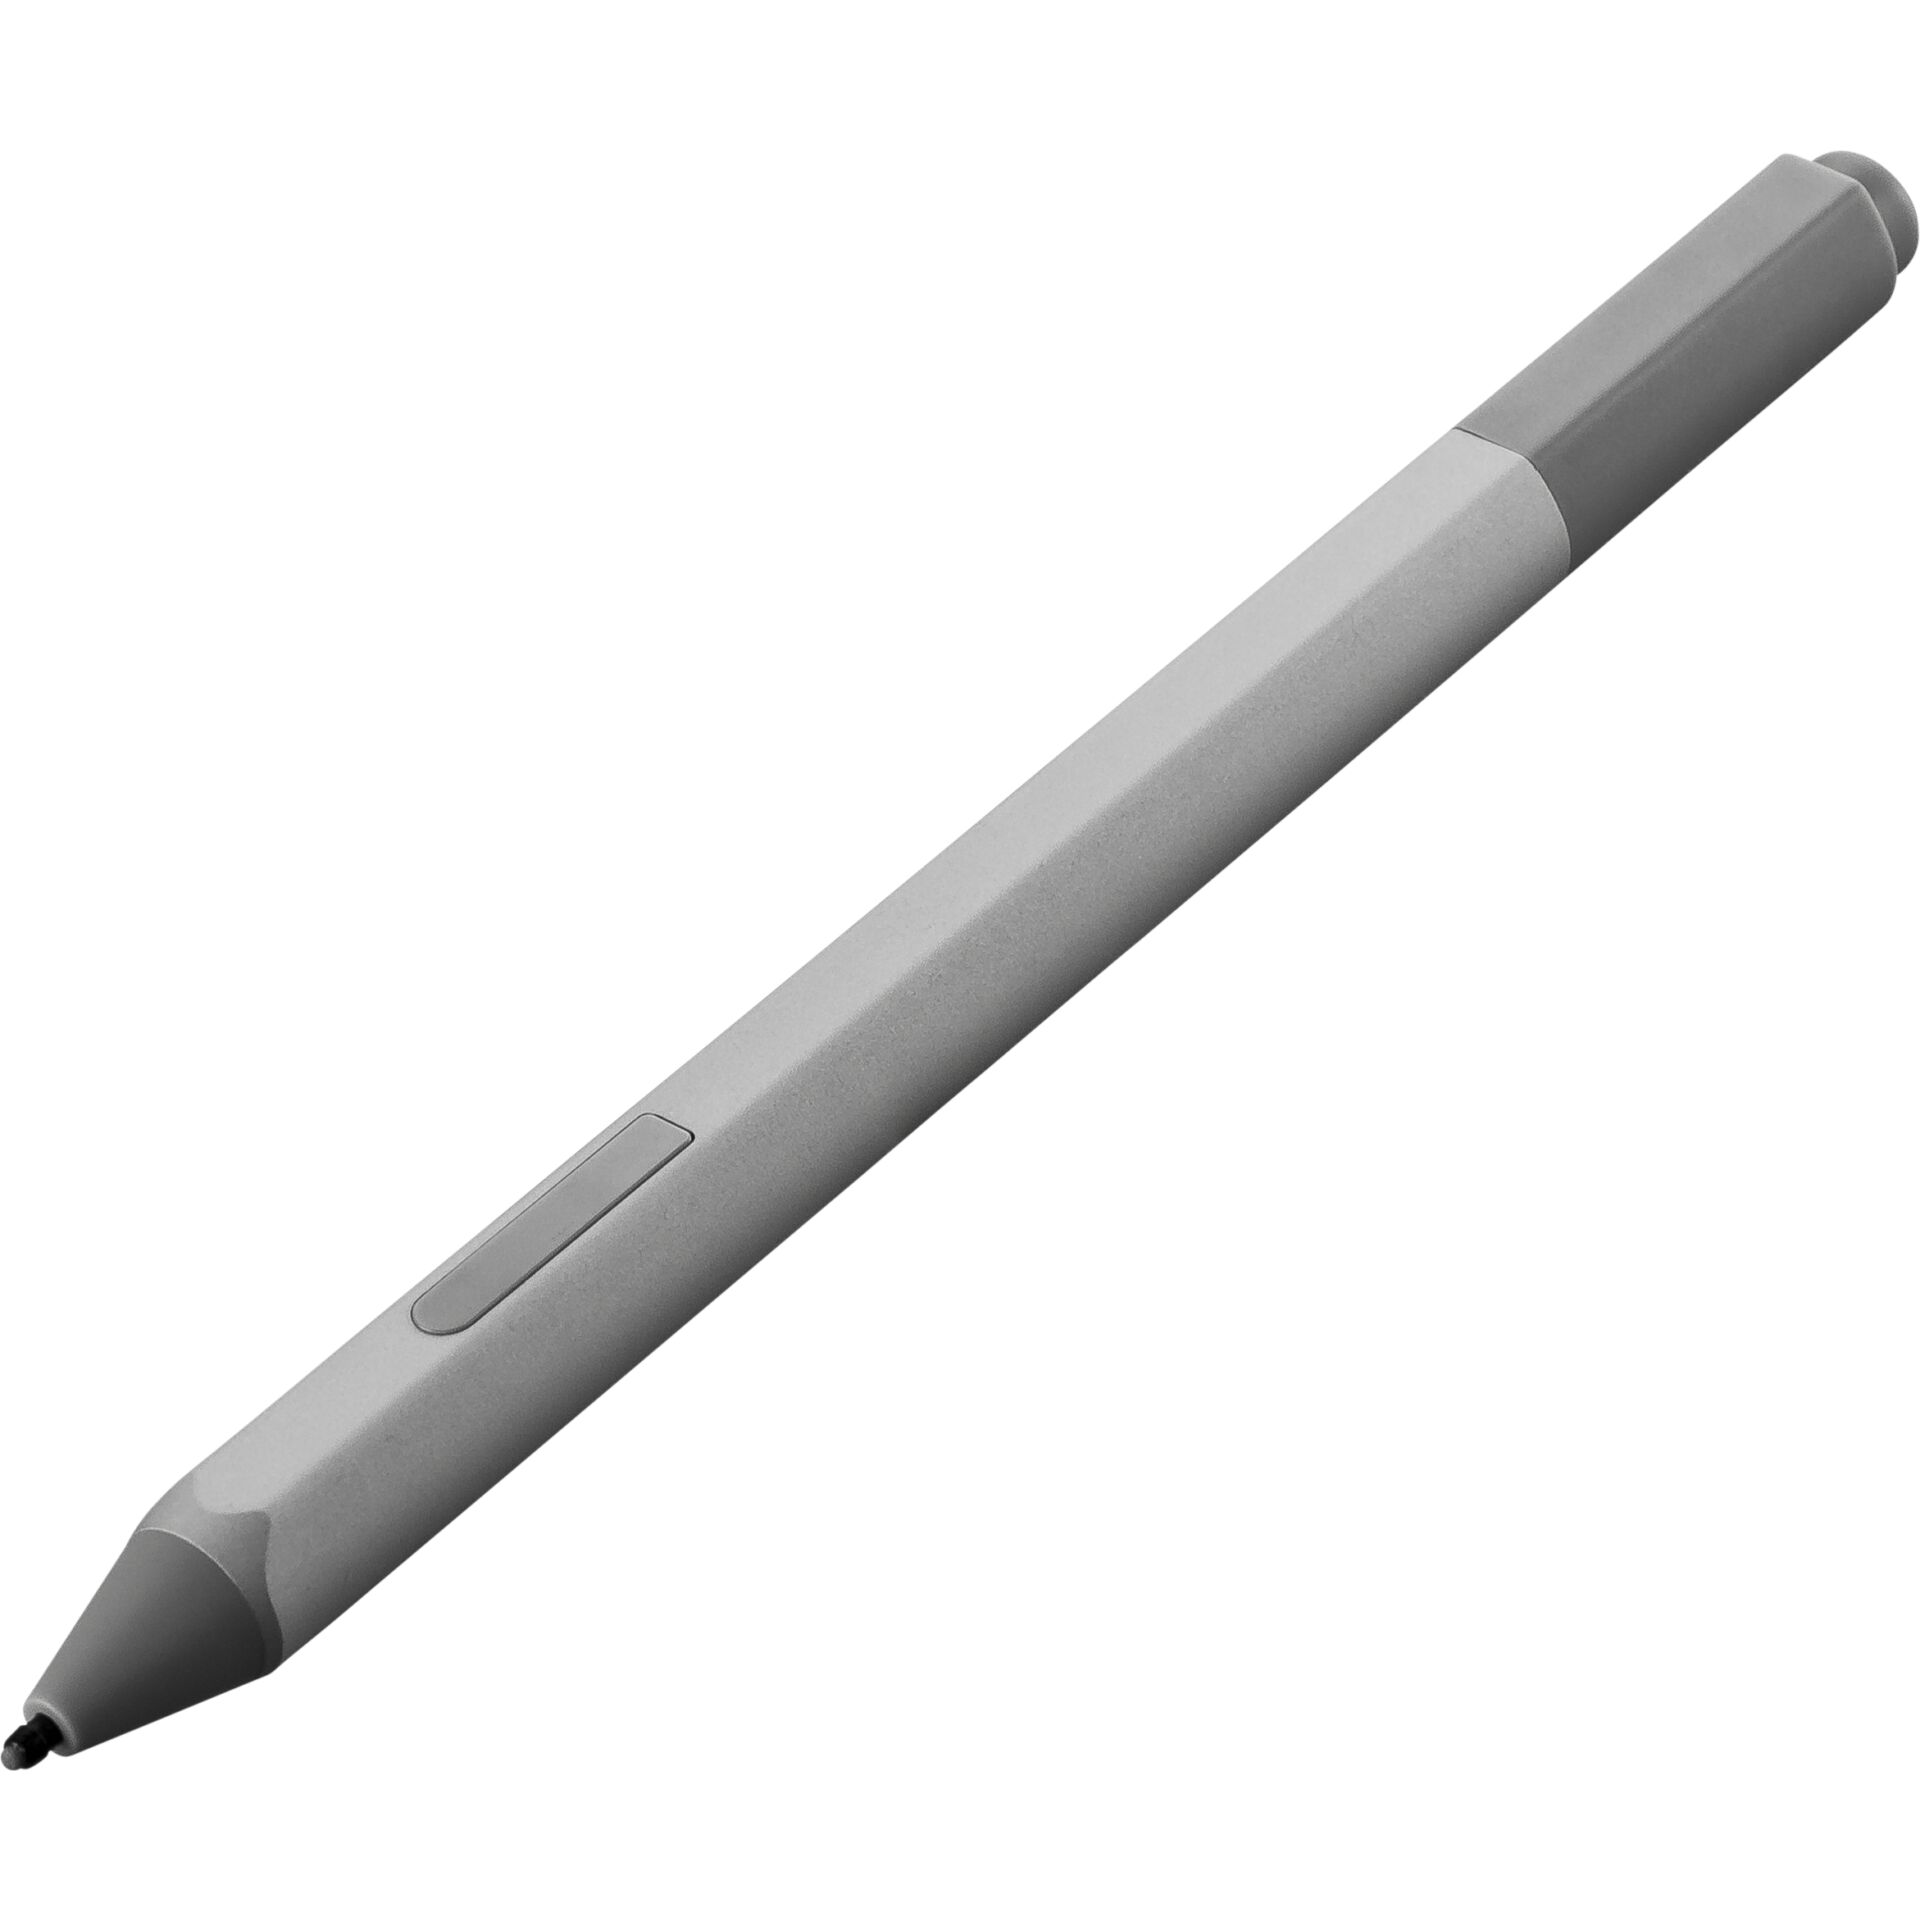 Microsoft Surface Pen, platin grau 